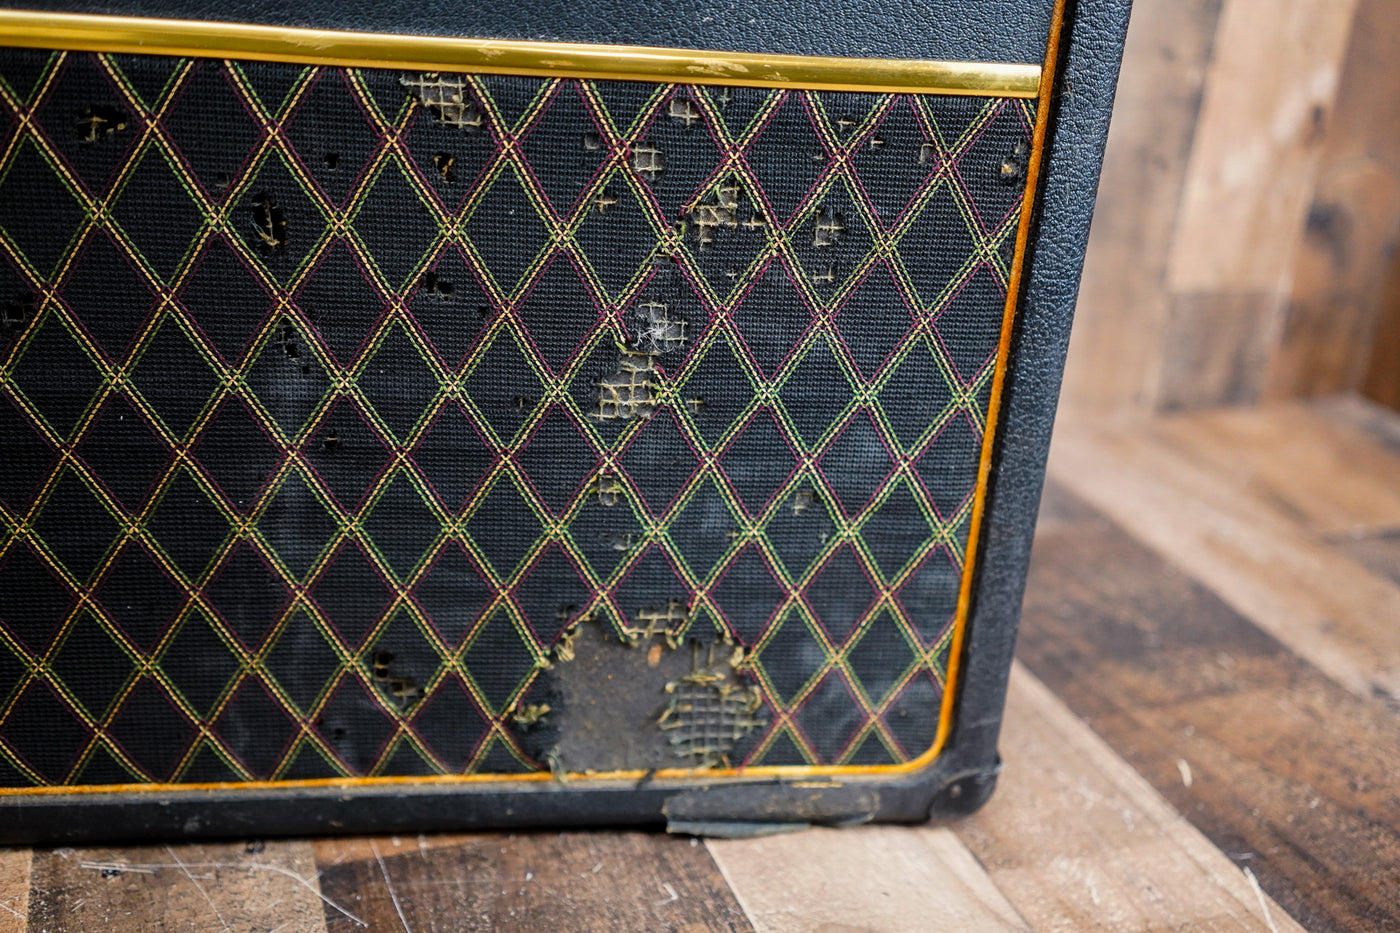 Vox Cambridge Reverb V1032 1967 Black Vintage Guitar Amplifier